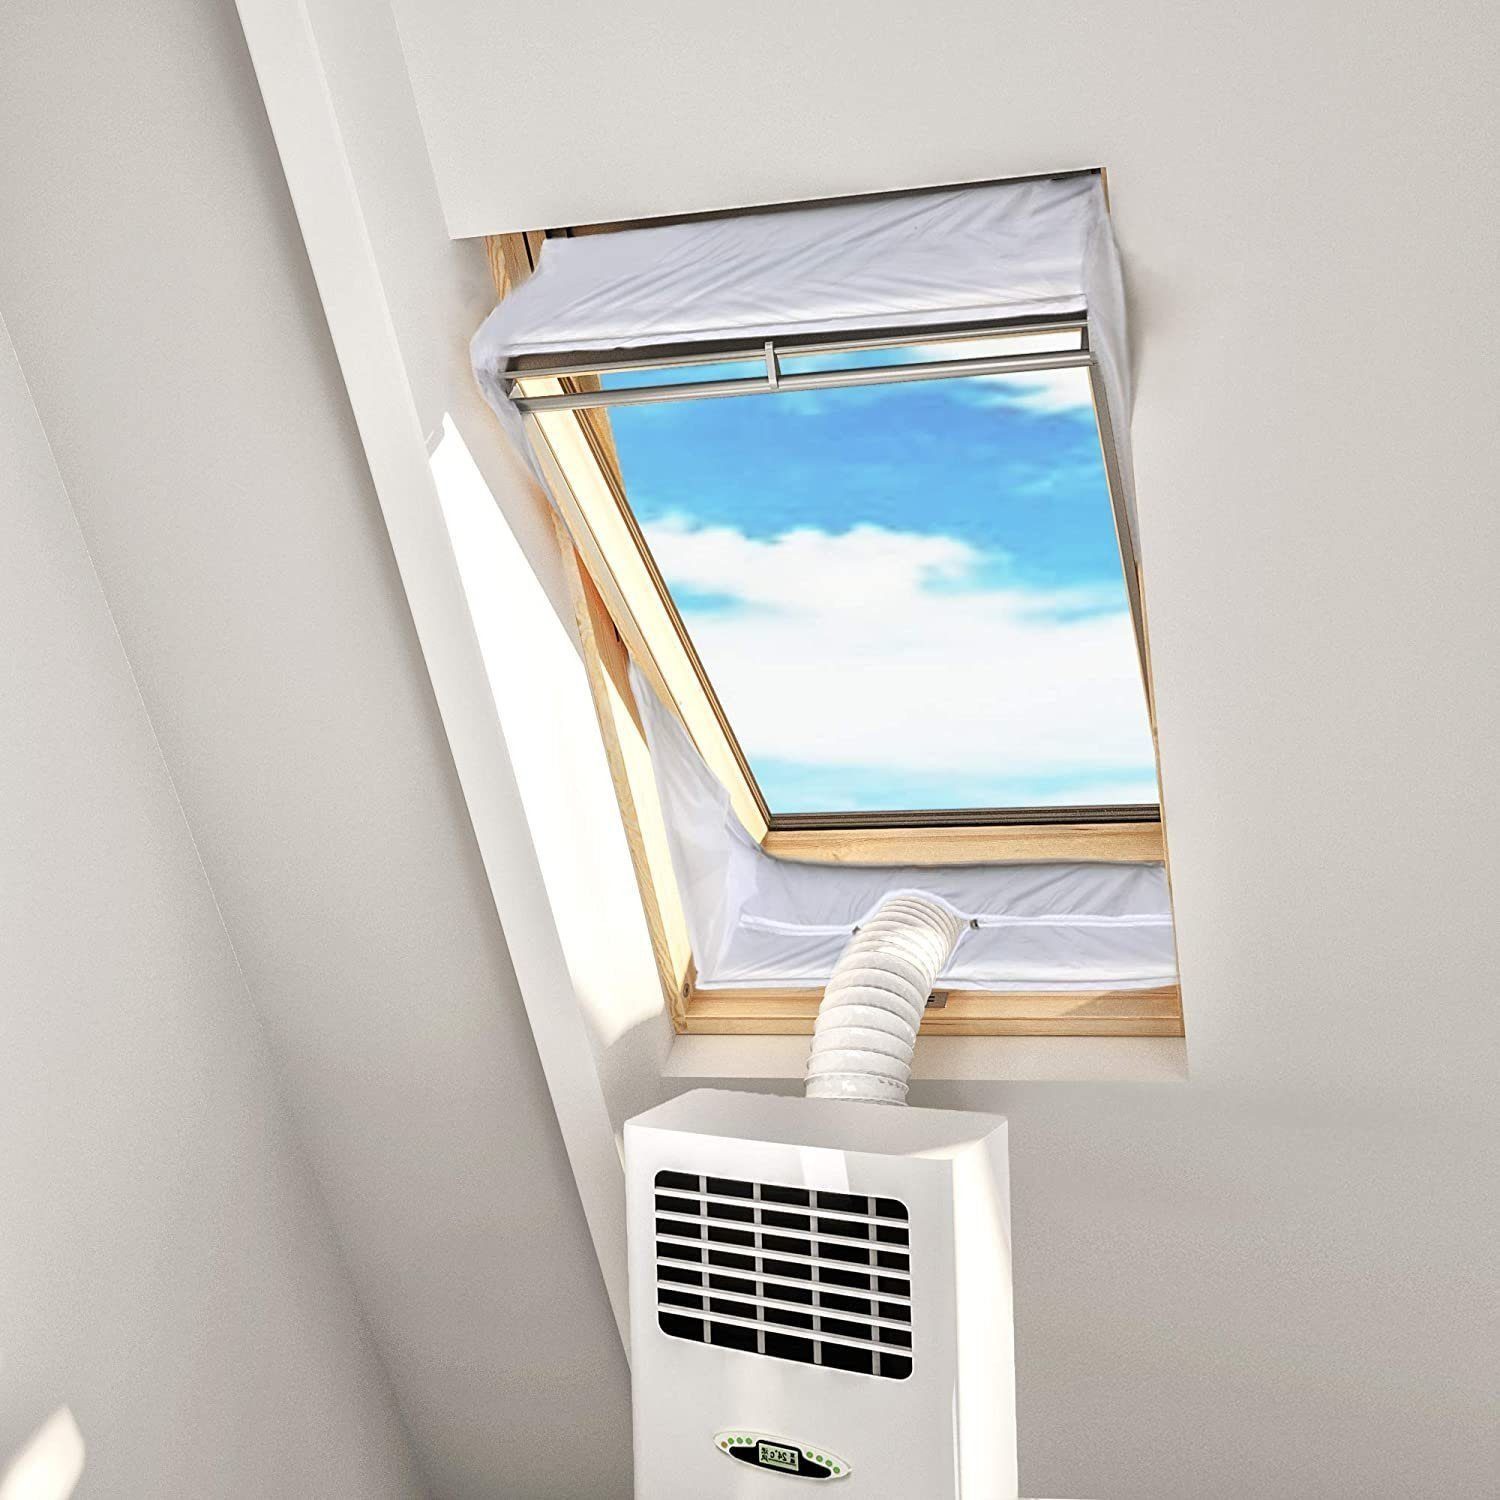 Fensterstopper Fensterabdichtung für Mobile Klimageräte Dachfenster, DTC GmbH, Fensterkitt Set